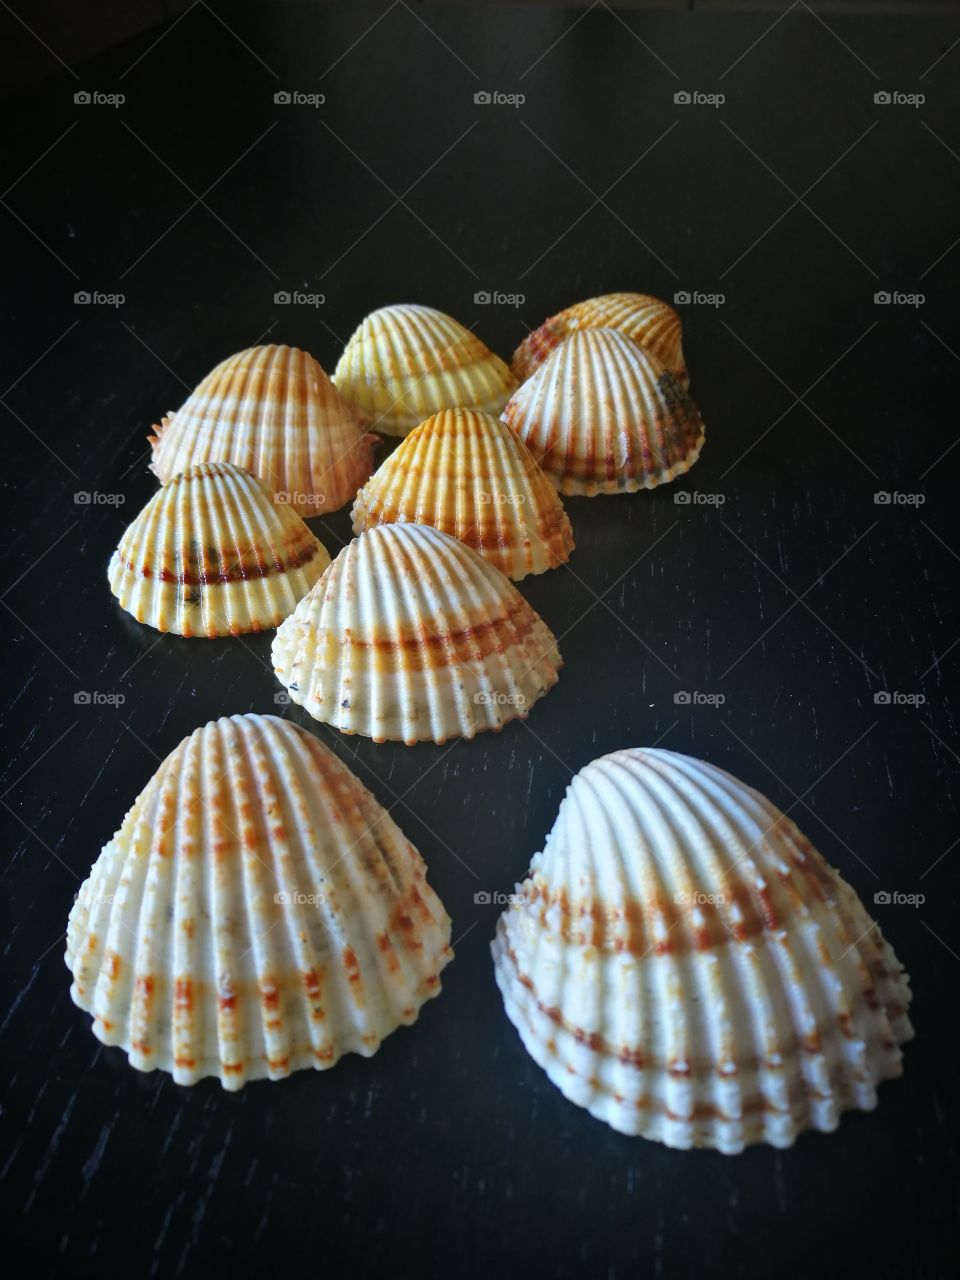 Arrangement of seashell in studio